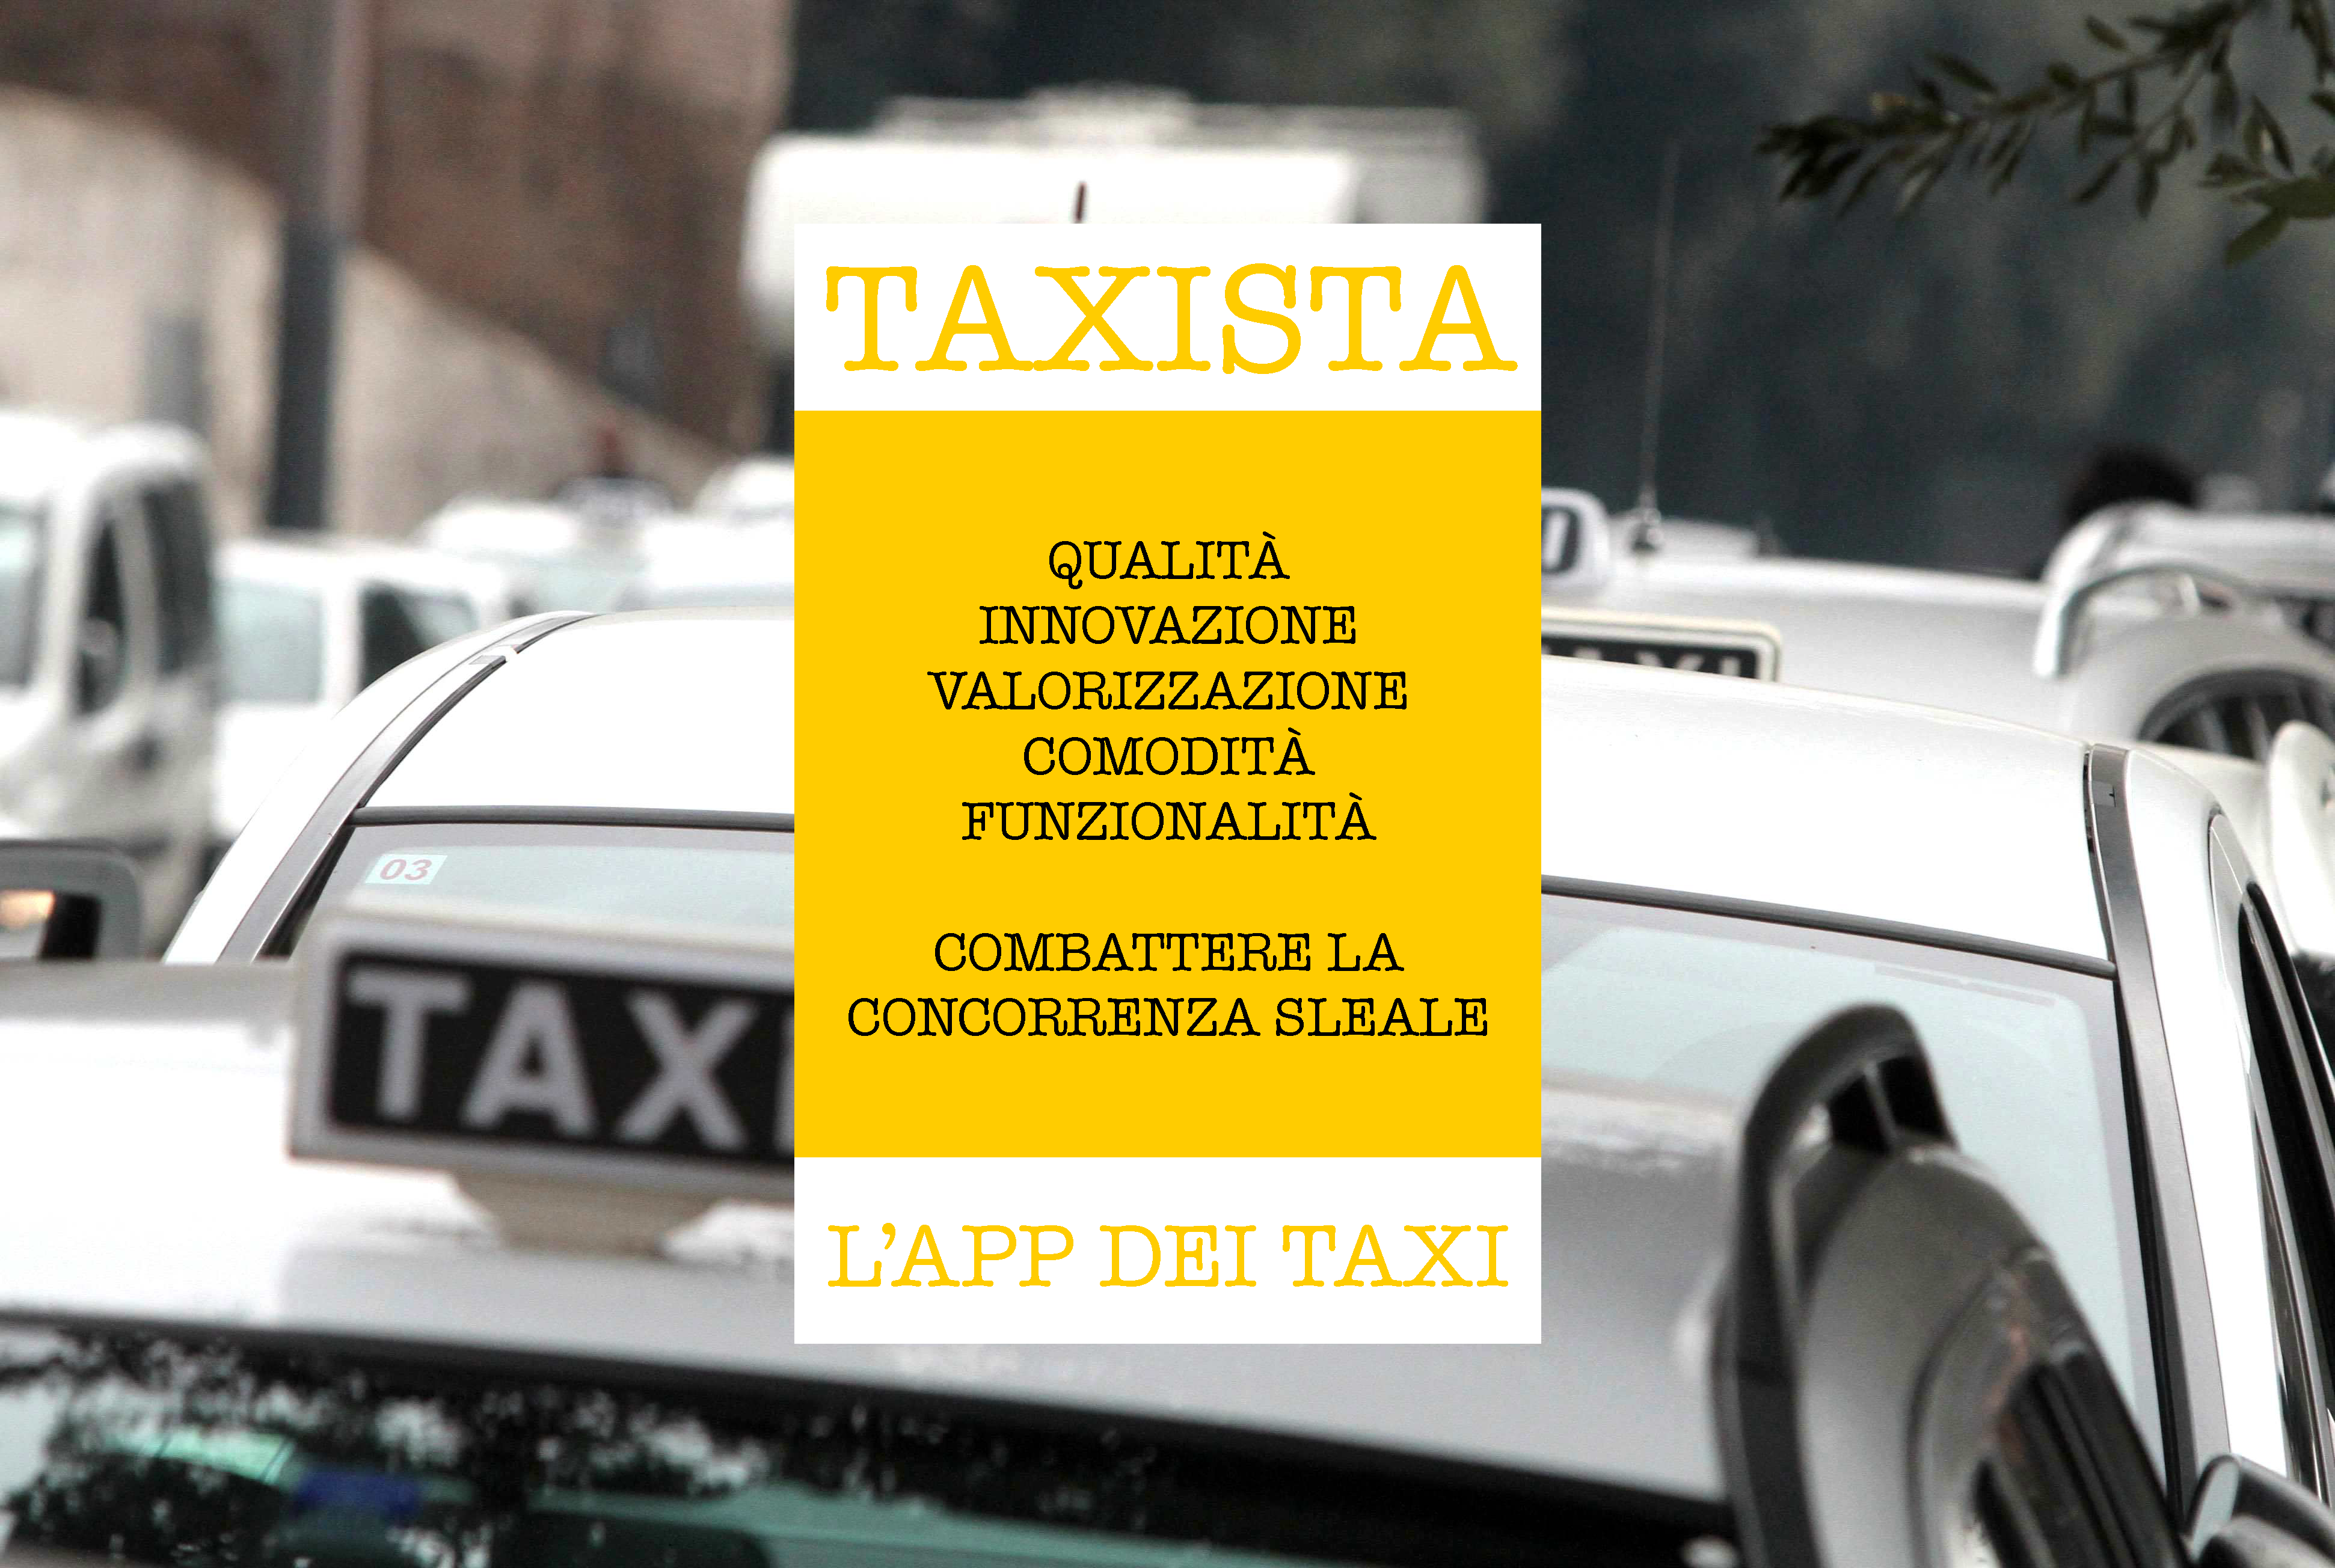 Taxista : una app dai tassisti per i clienti ed i tassisti.